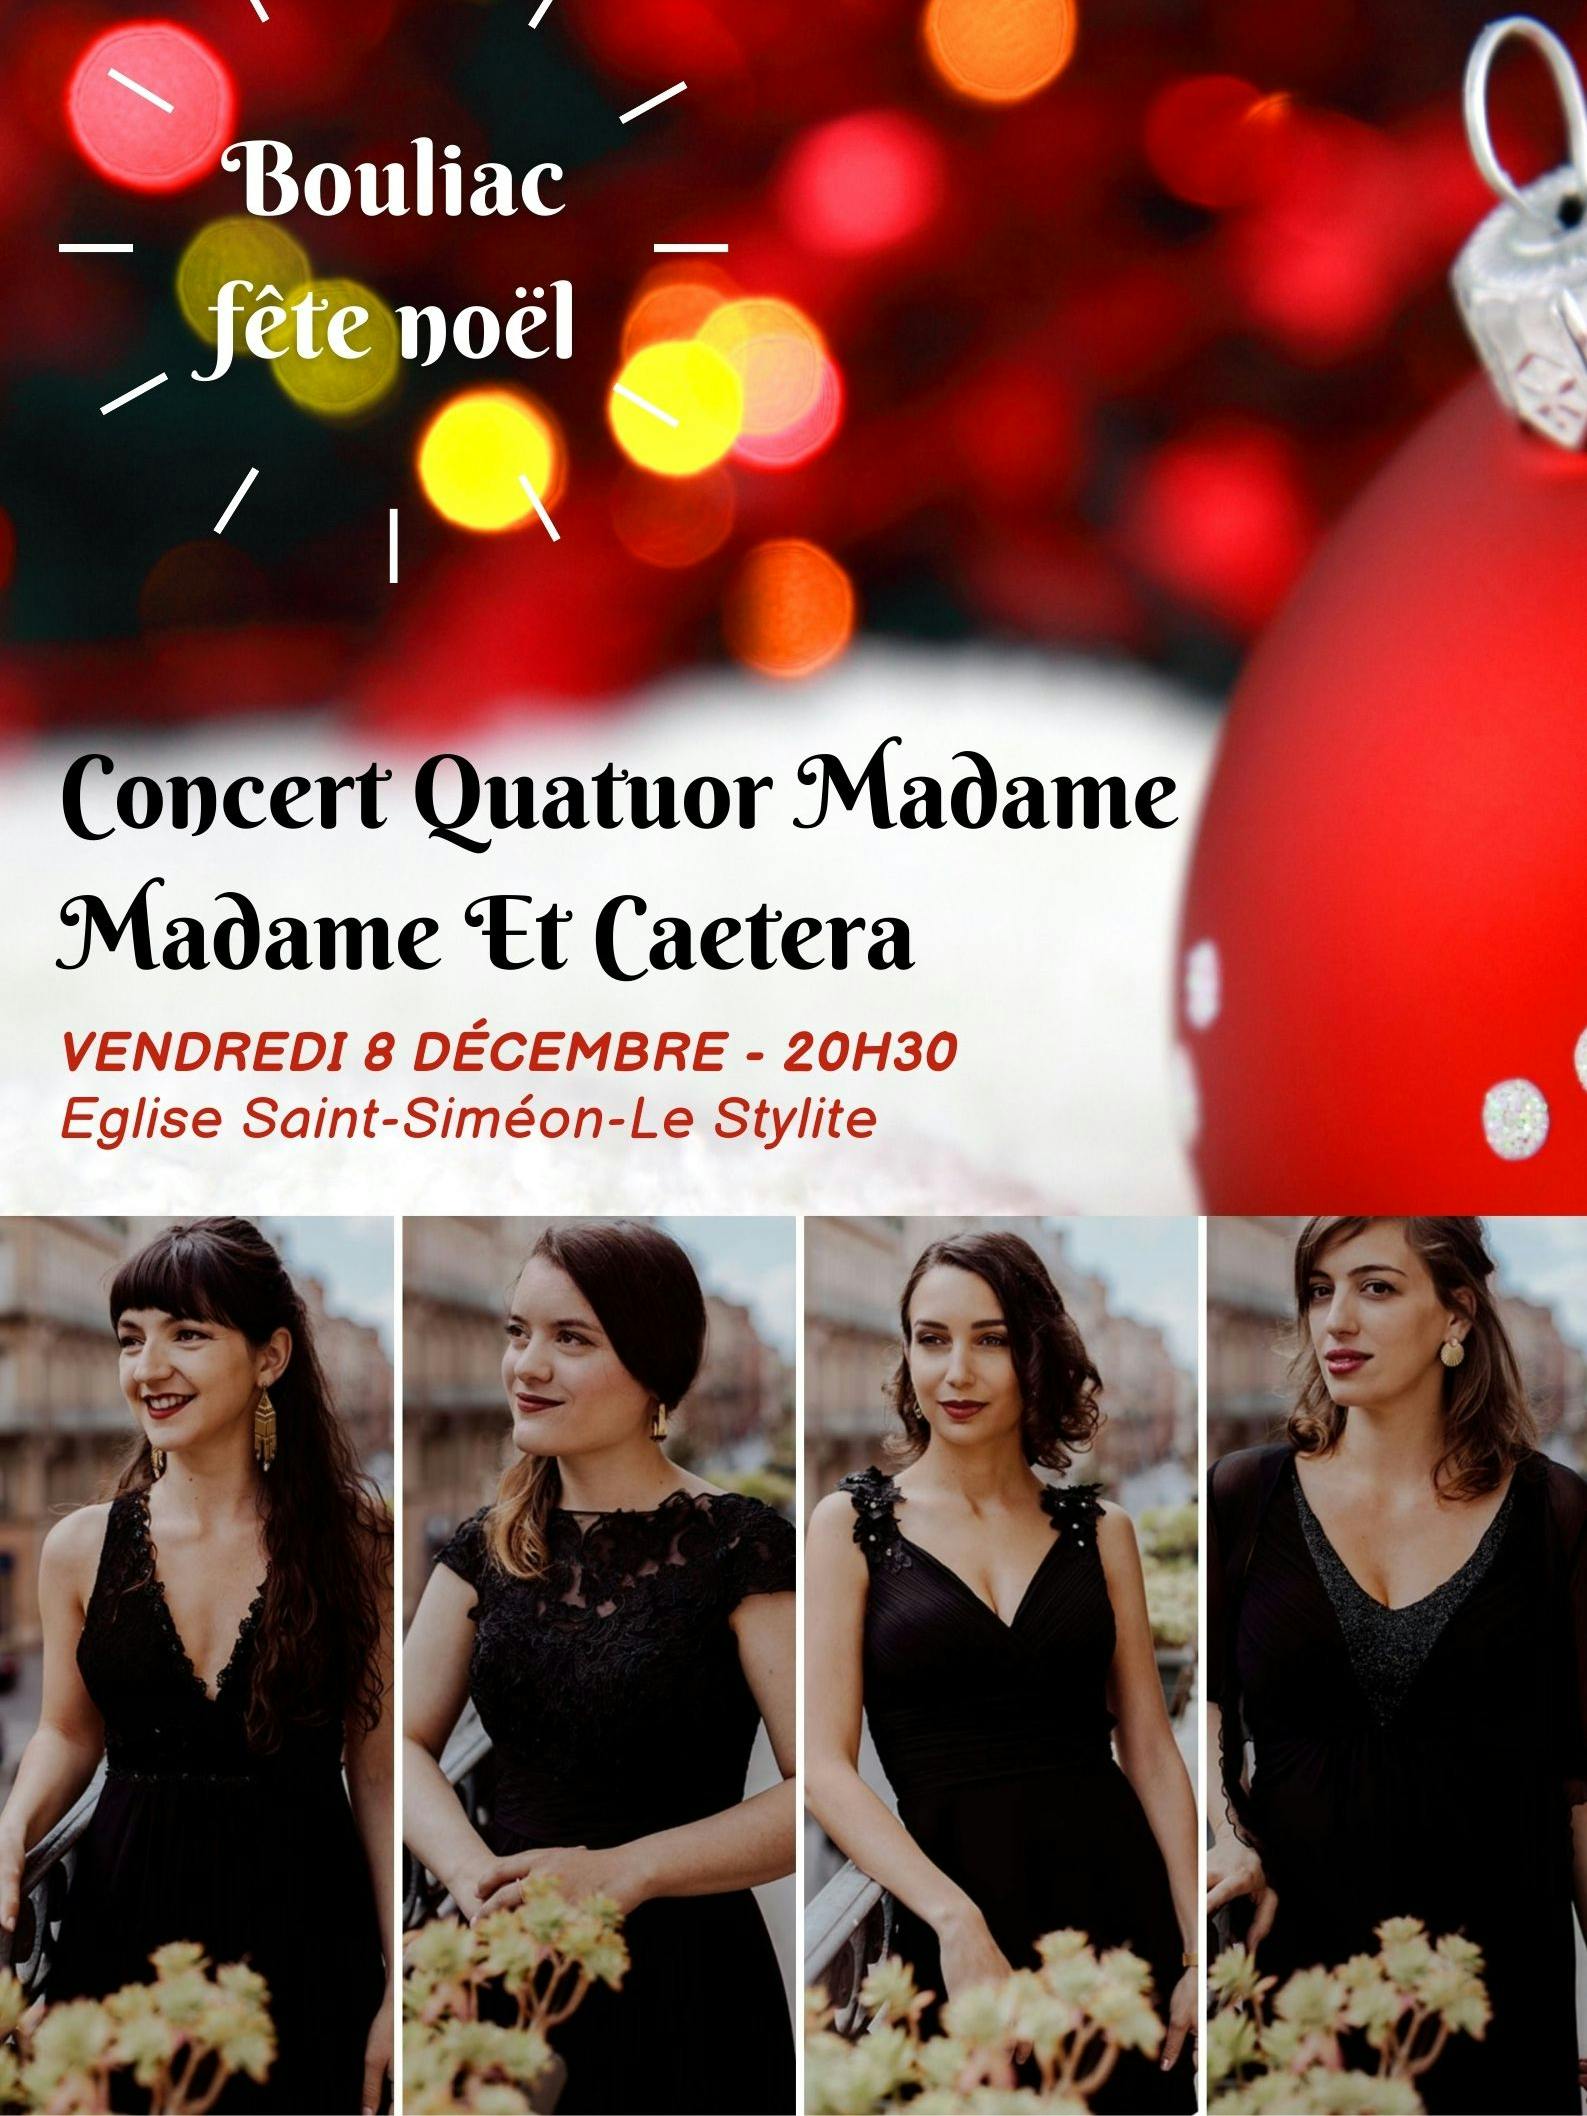 Concert Quatuor madame